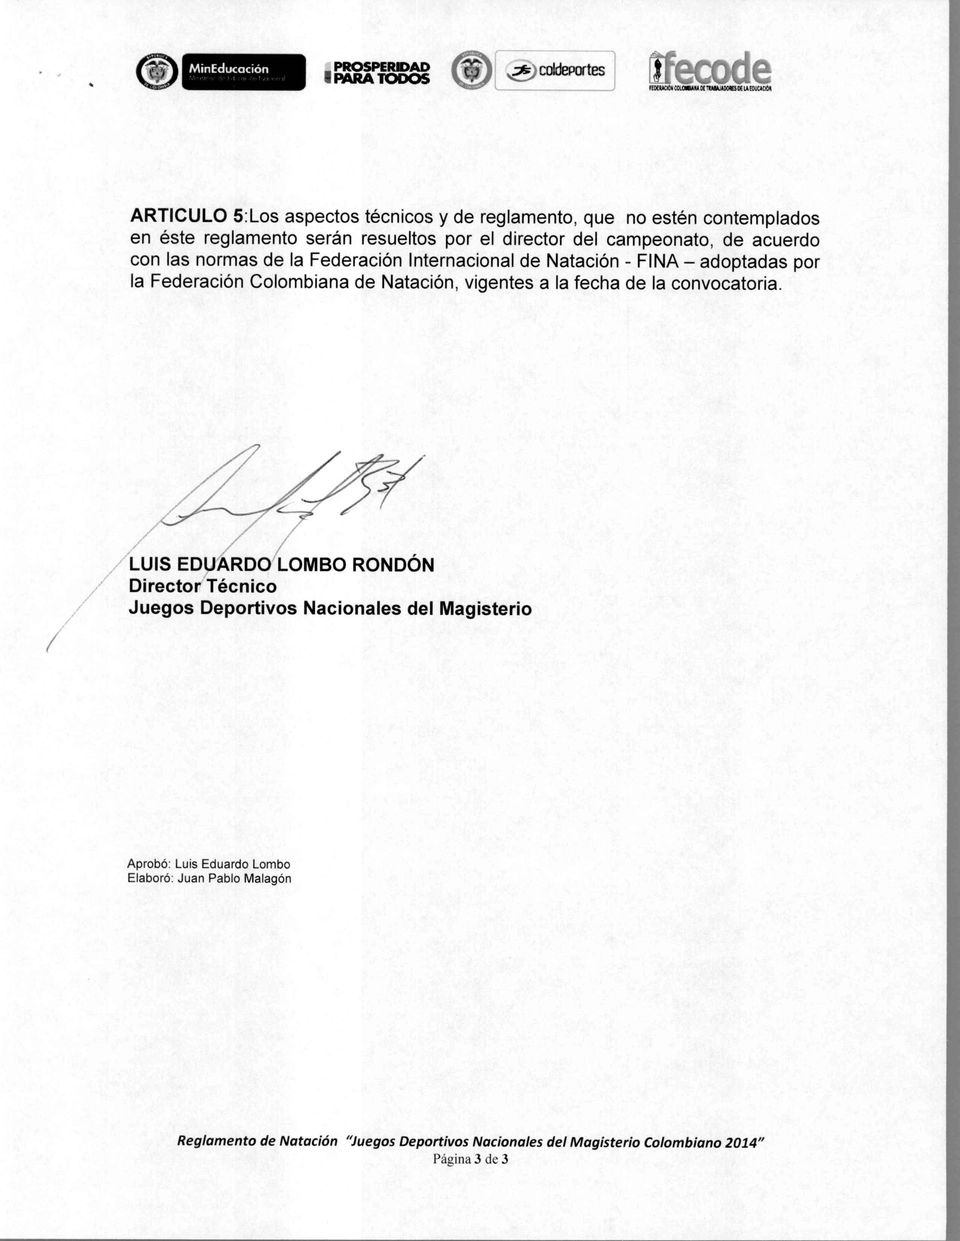 Federación Colombiana de Natación, vigentes a la fecha de la convocatoria.